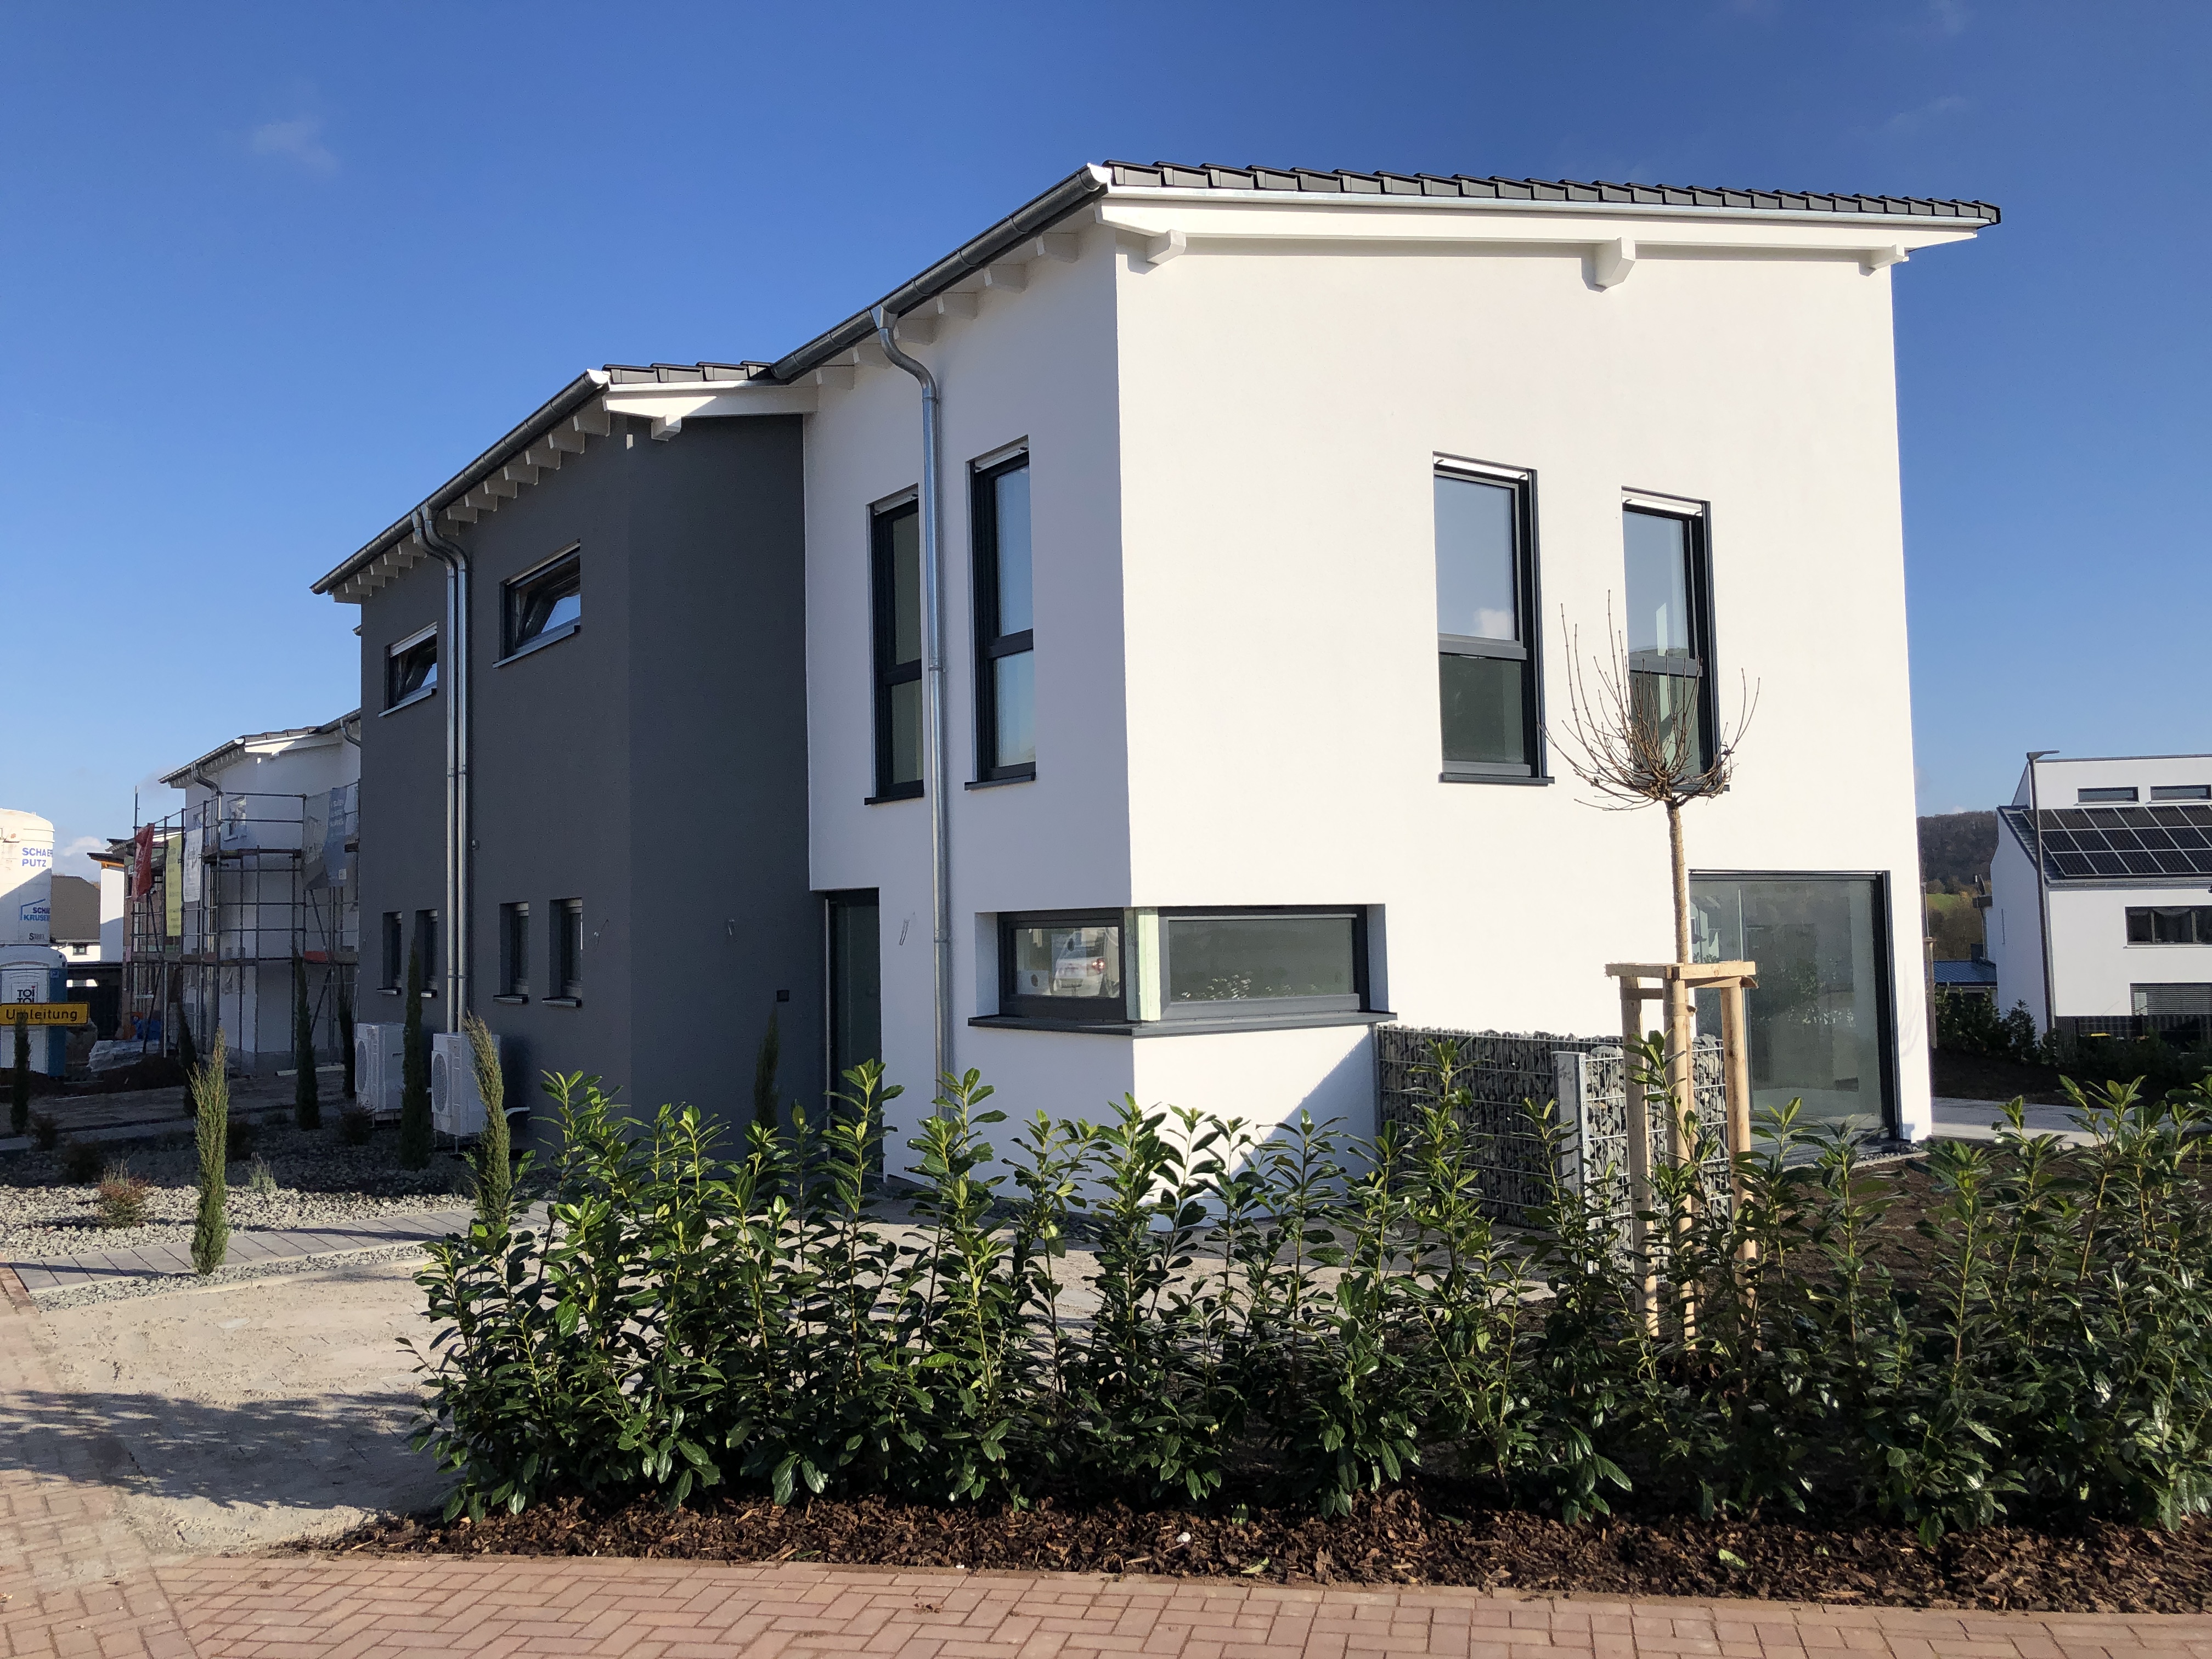 Neubau von einer Doppelhausanlage in Roxheim 2